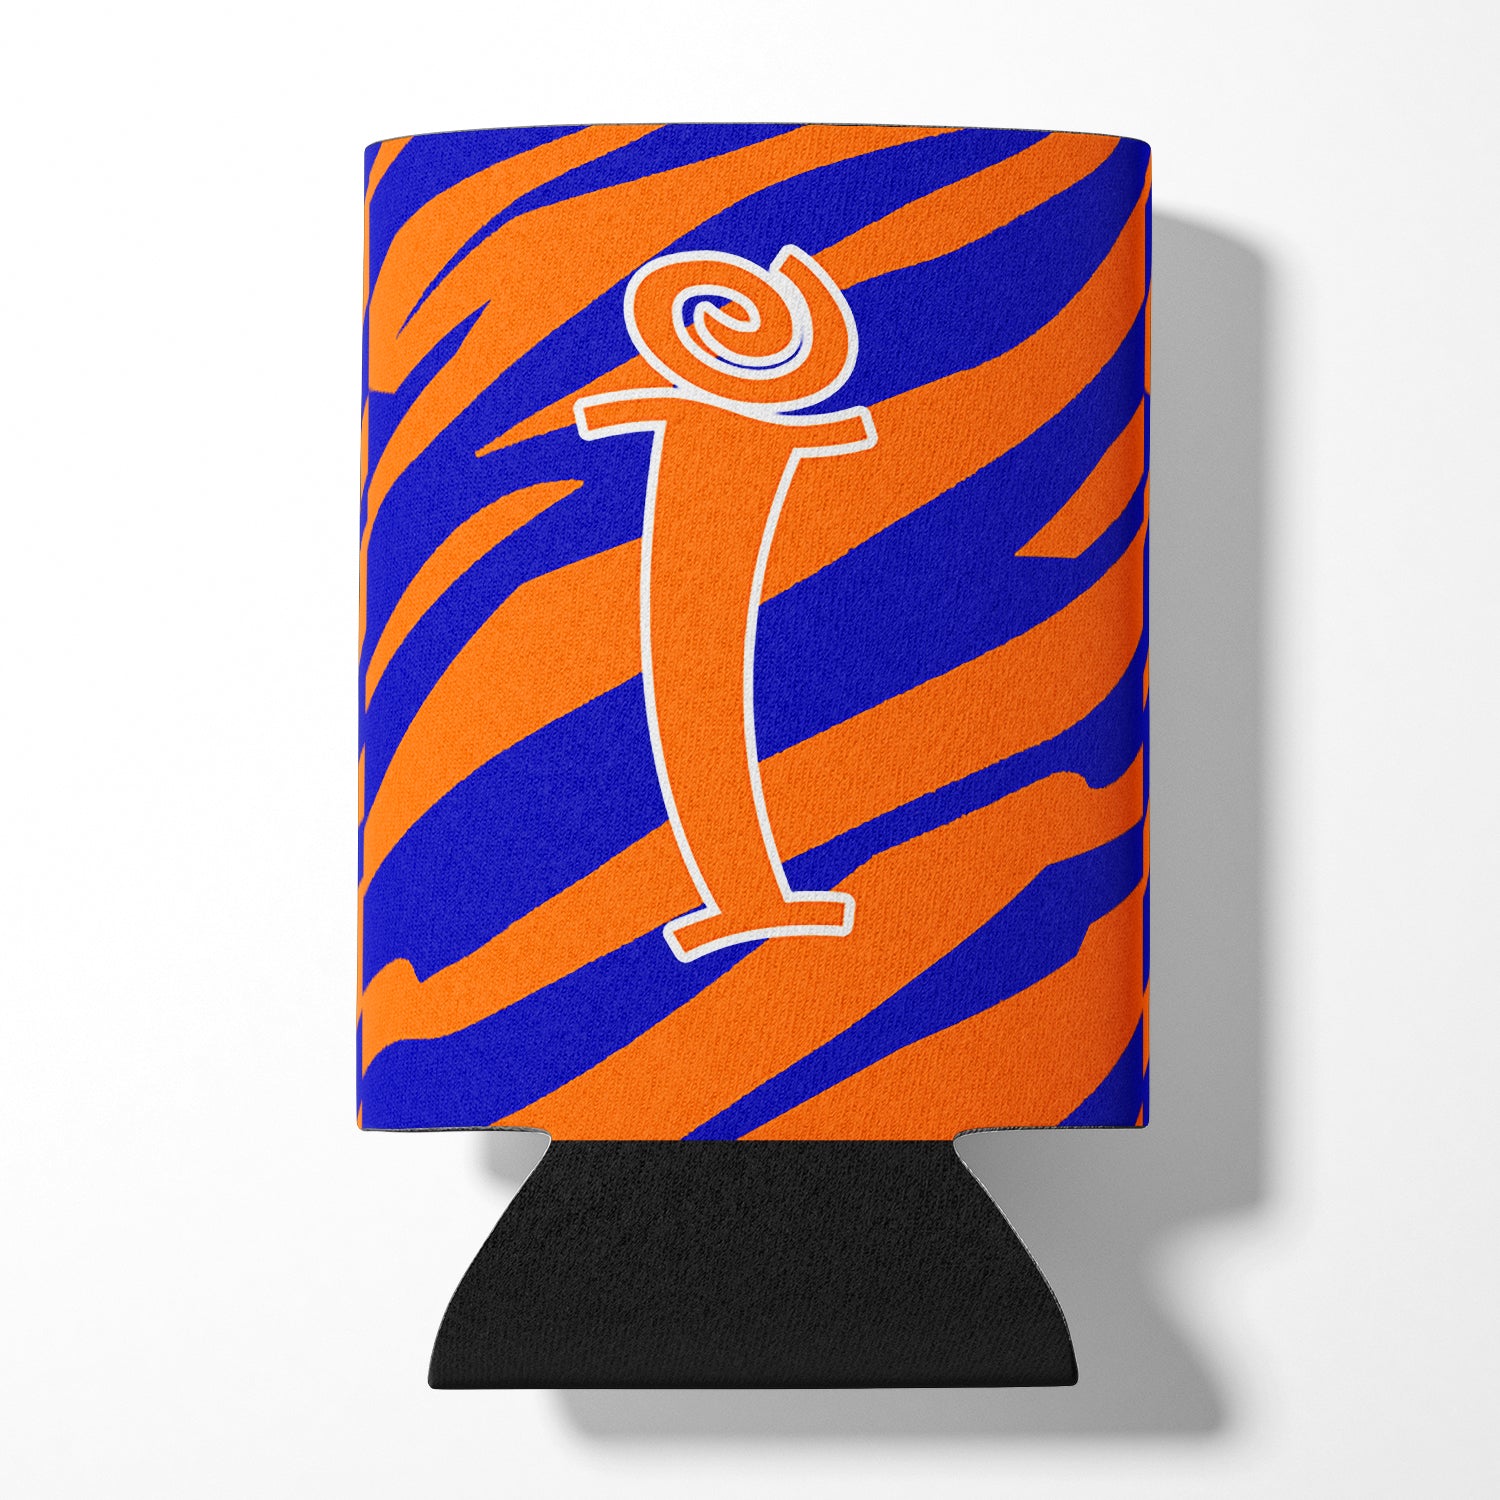 Lettre I Initial Monogram - Tiger Stripe Blue and Orange Can Beverage Insulator Hugger